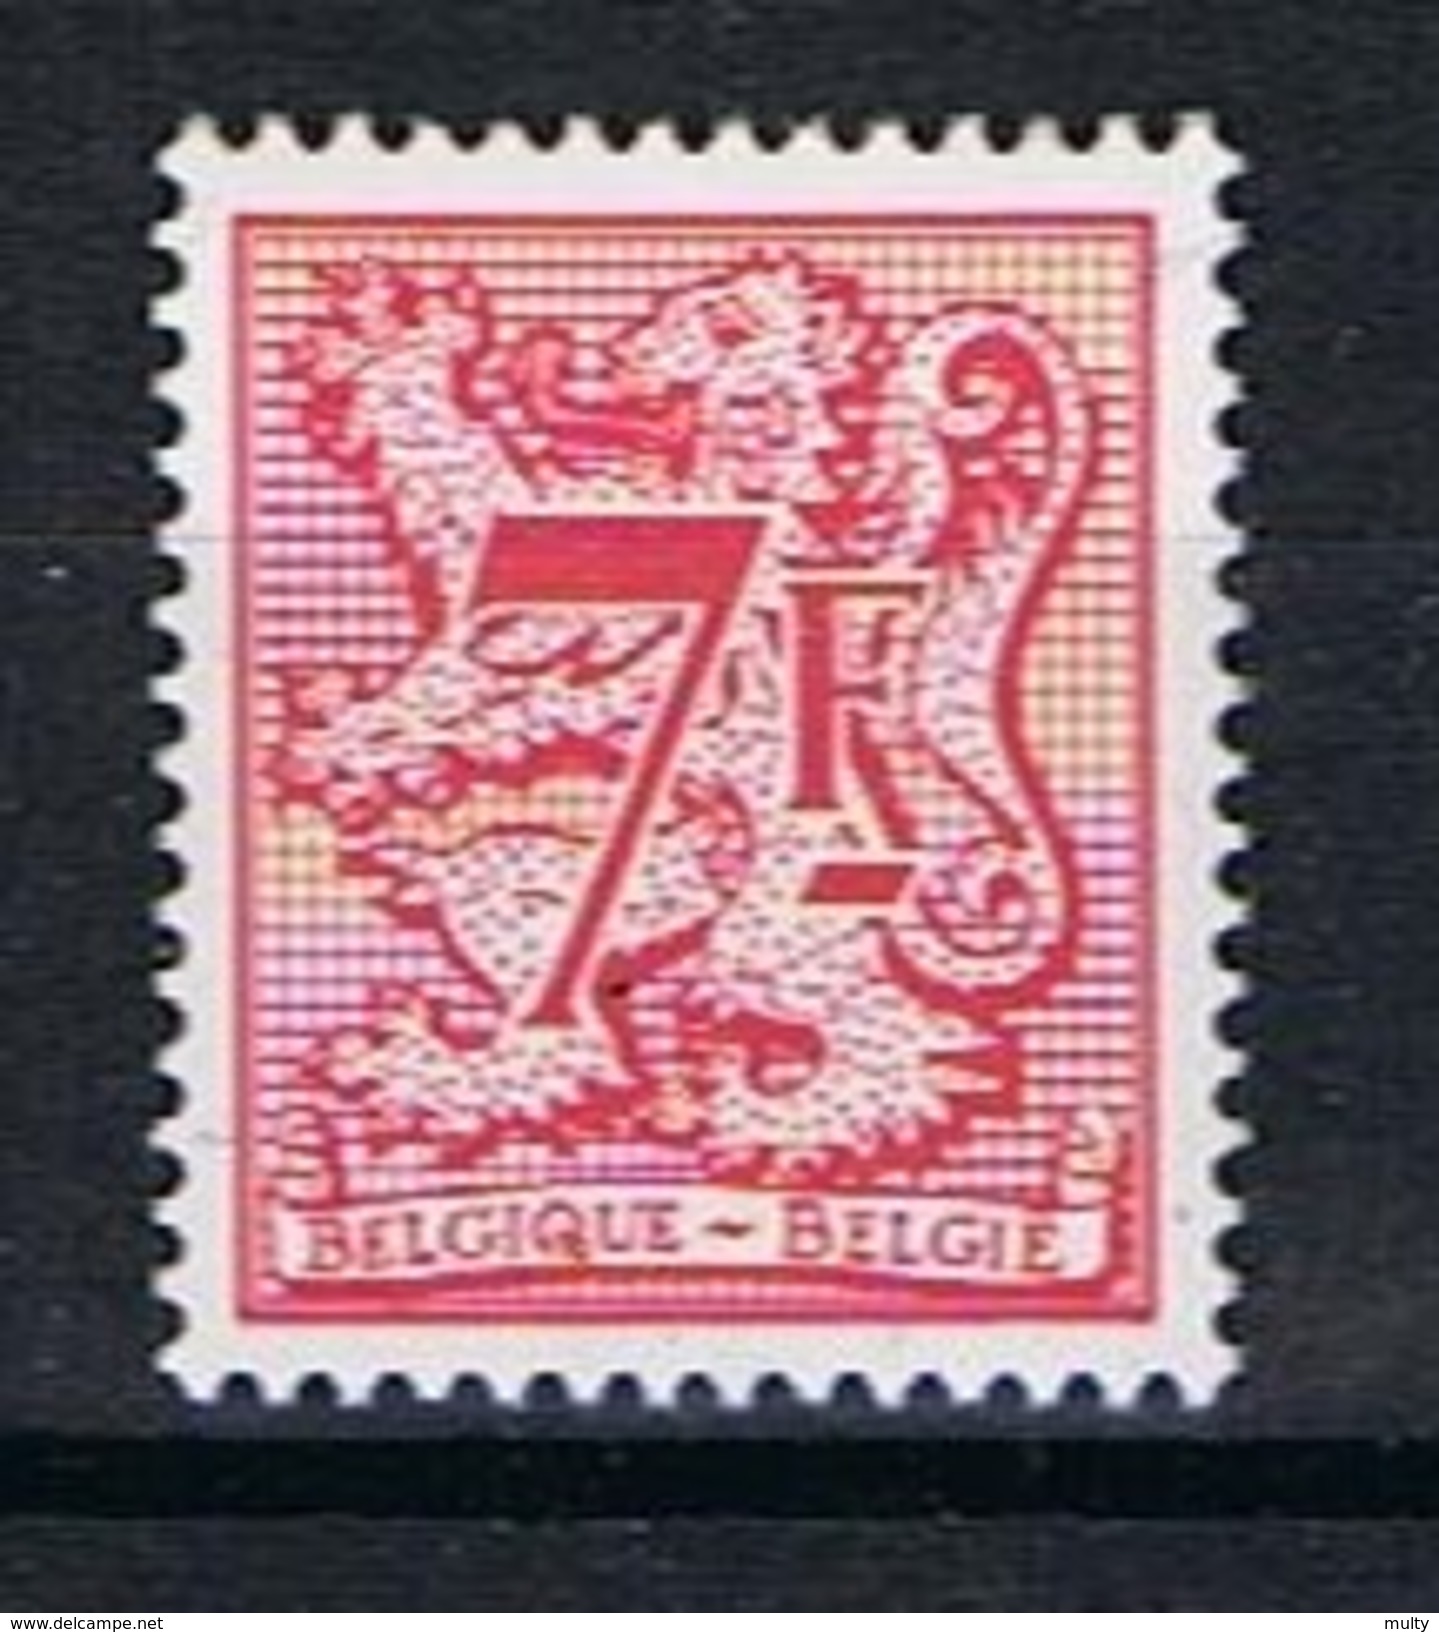 Belgie OCB 2051 (**) - 1977-1985 Cijfer Op De Leeuw